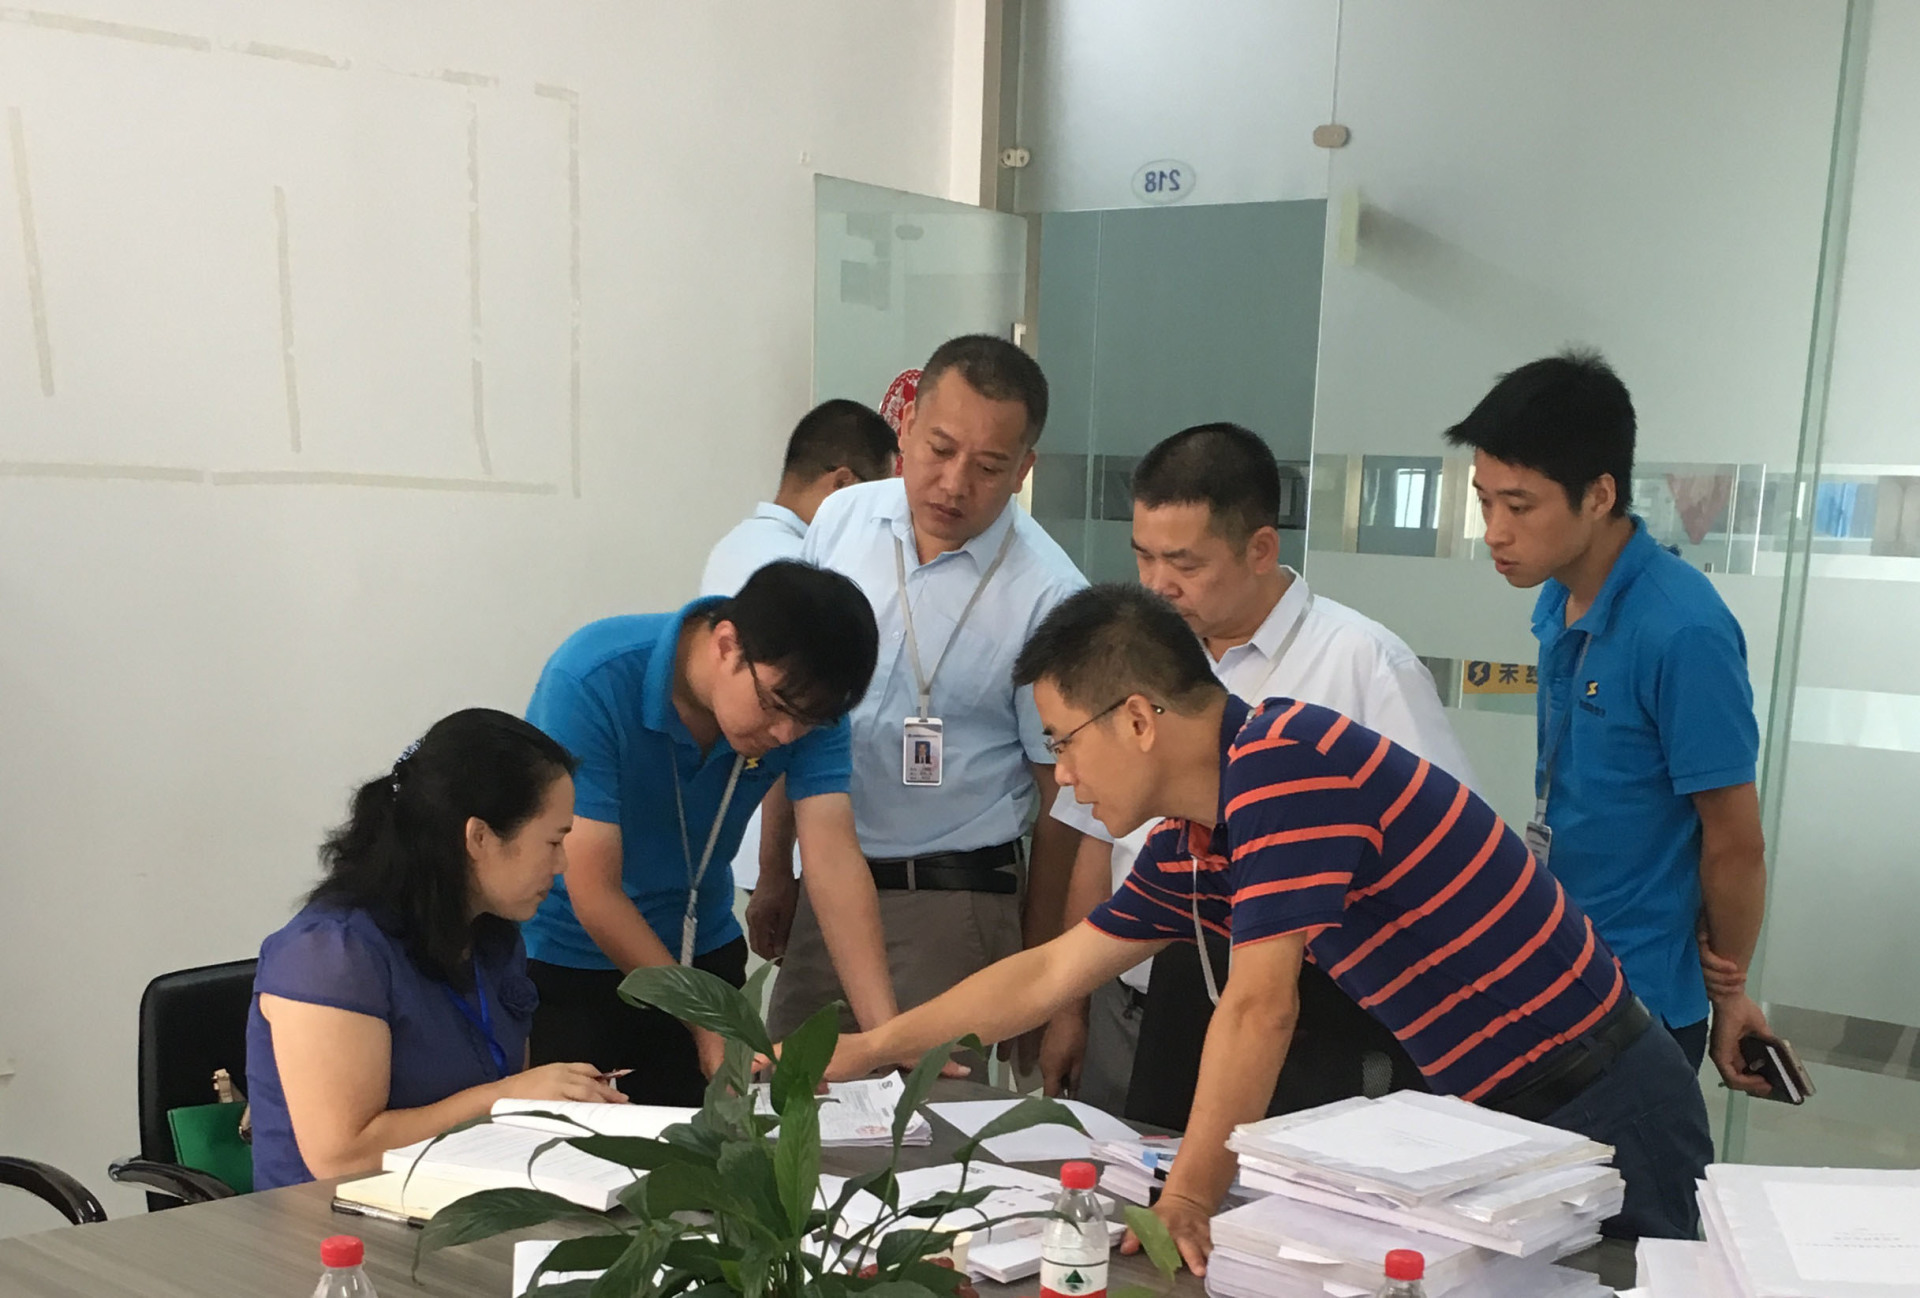 廣西壯族自治區質量技術監督局認證認可監管處專家組在我司進行現場核驗